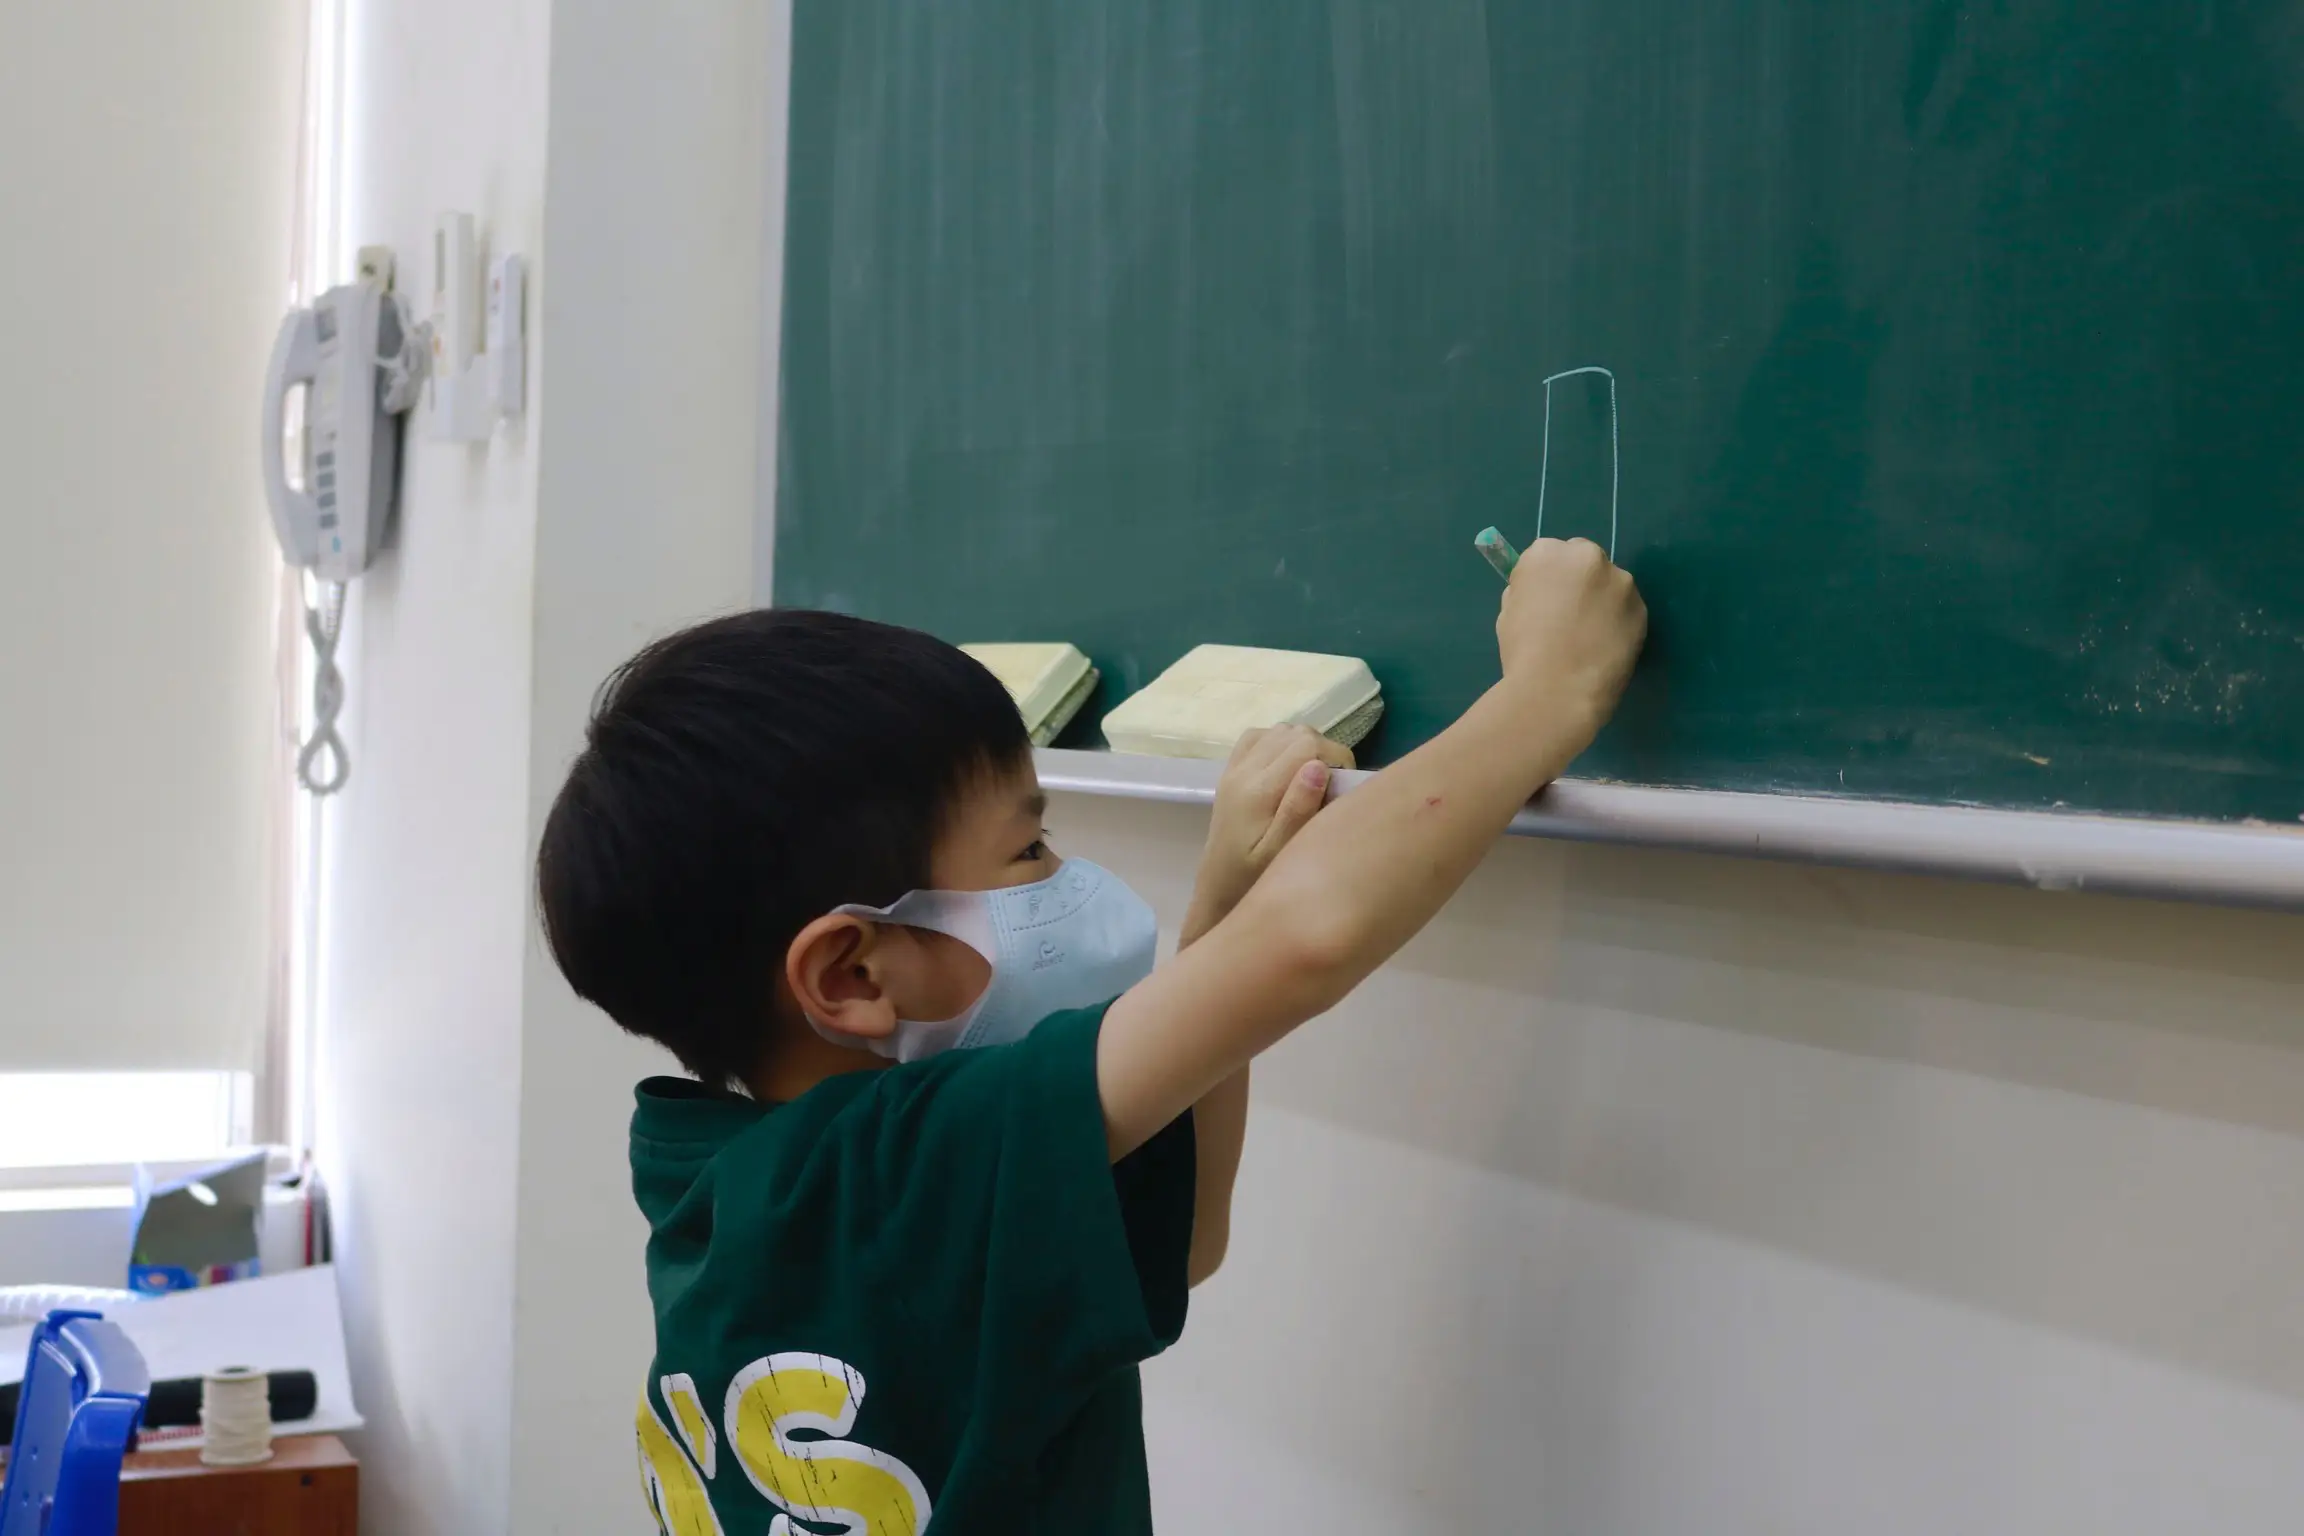 一個戴口罩的孩子正在黑板上書寫的特寫照片。